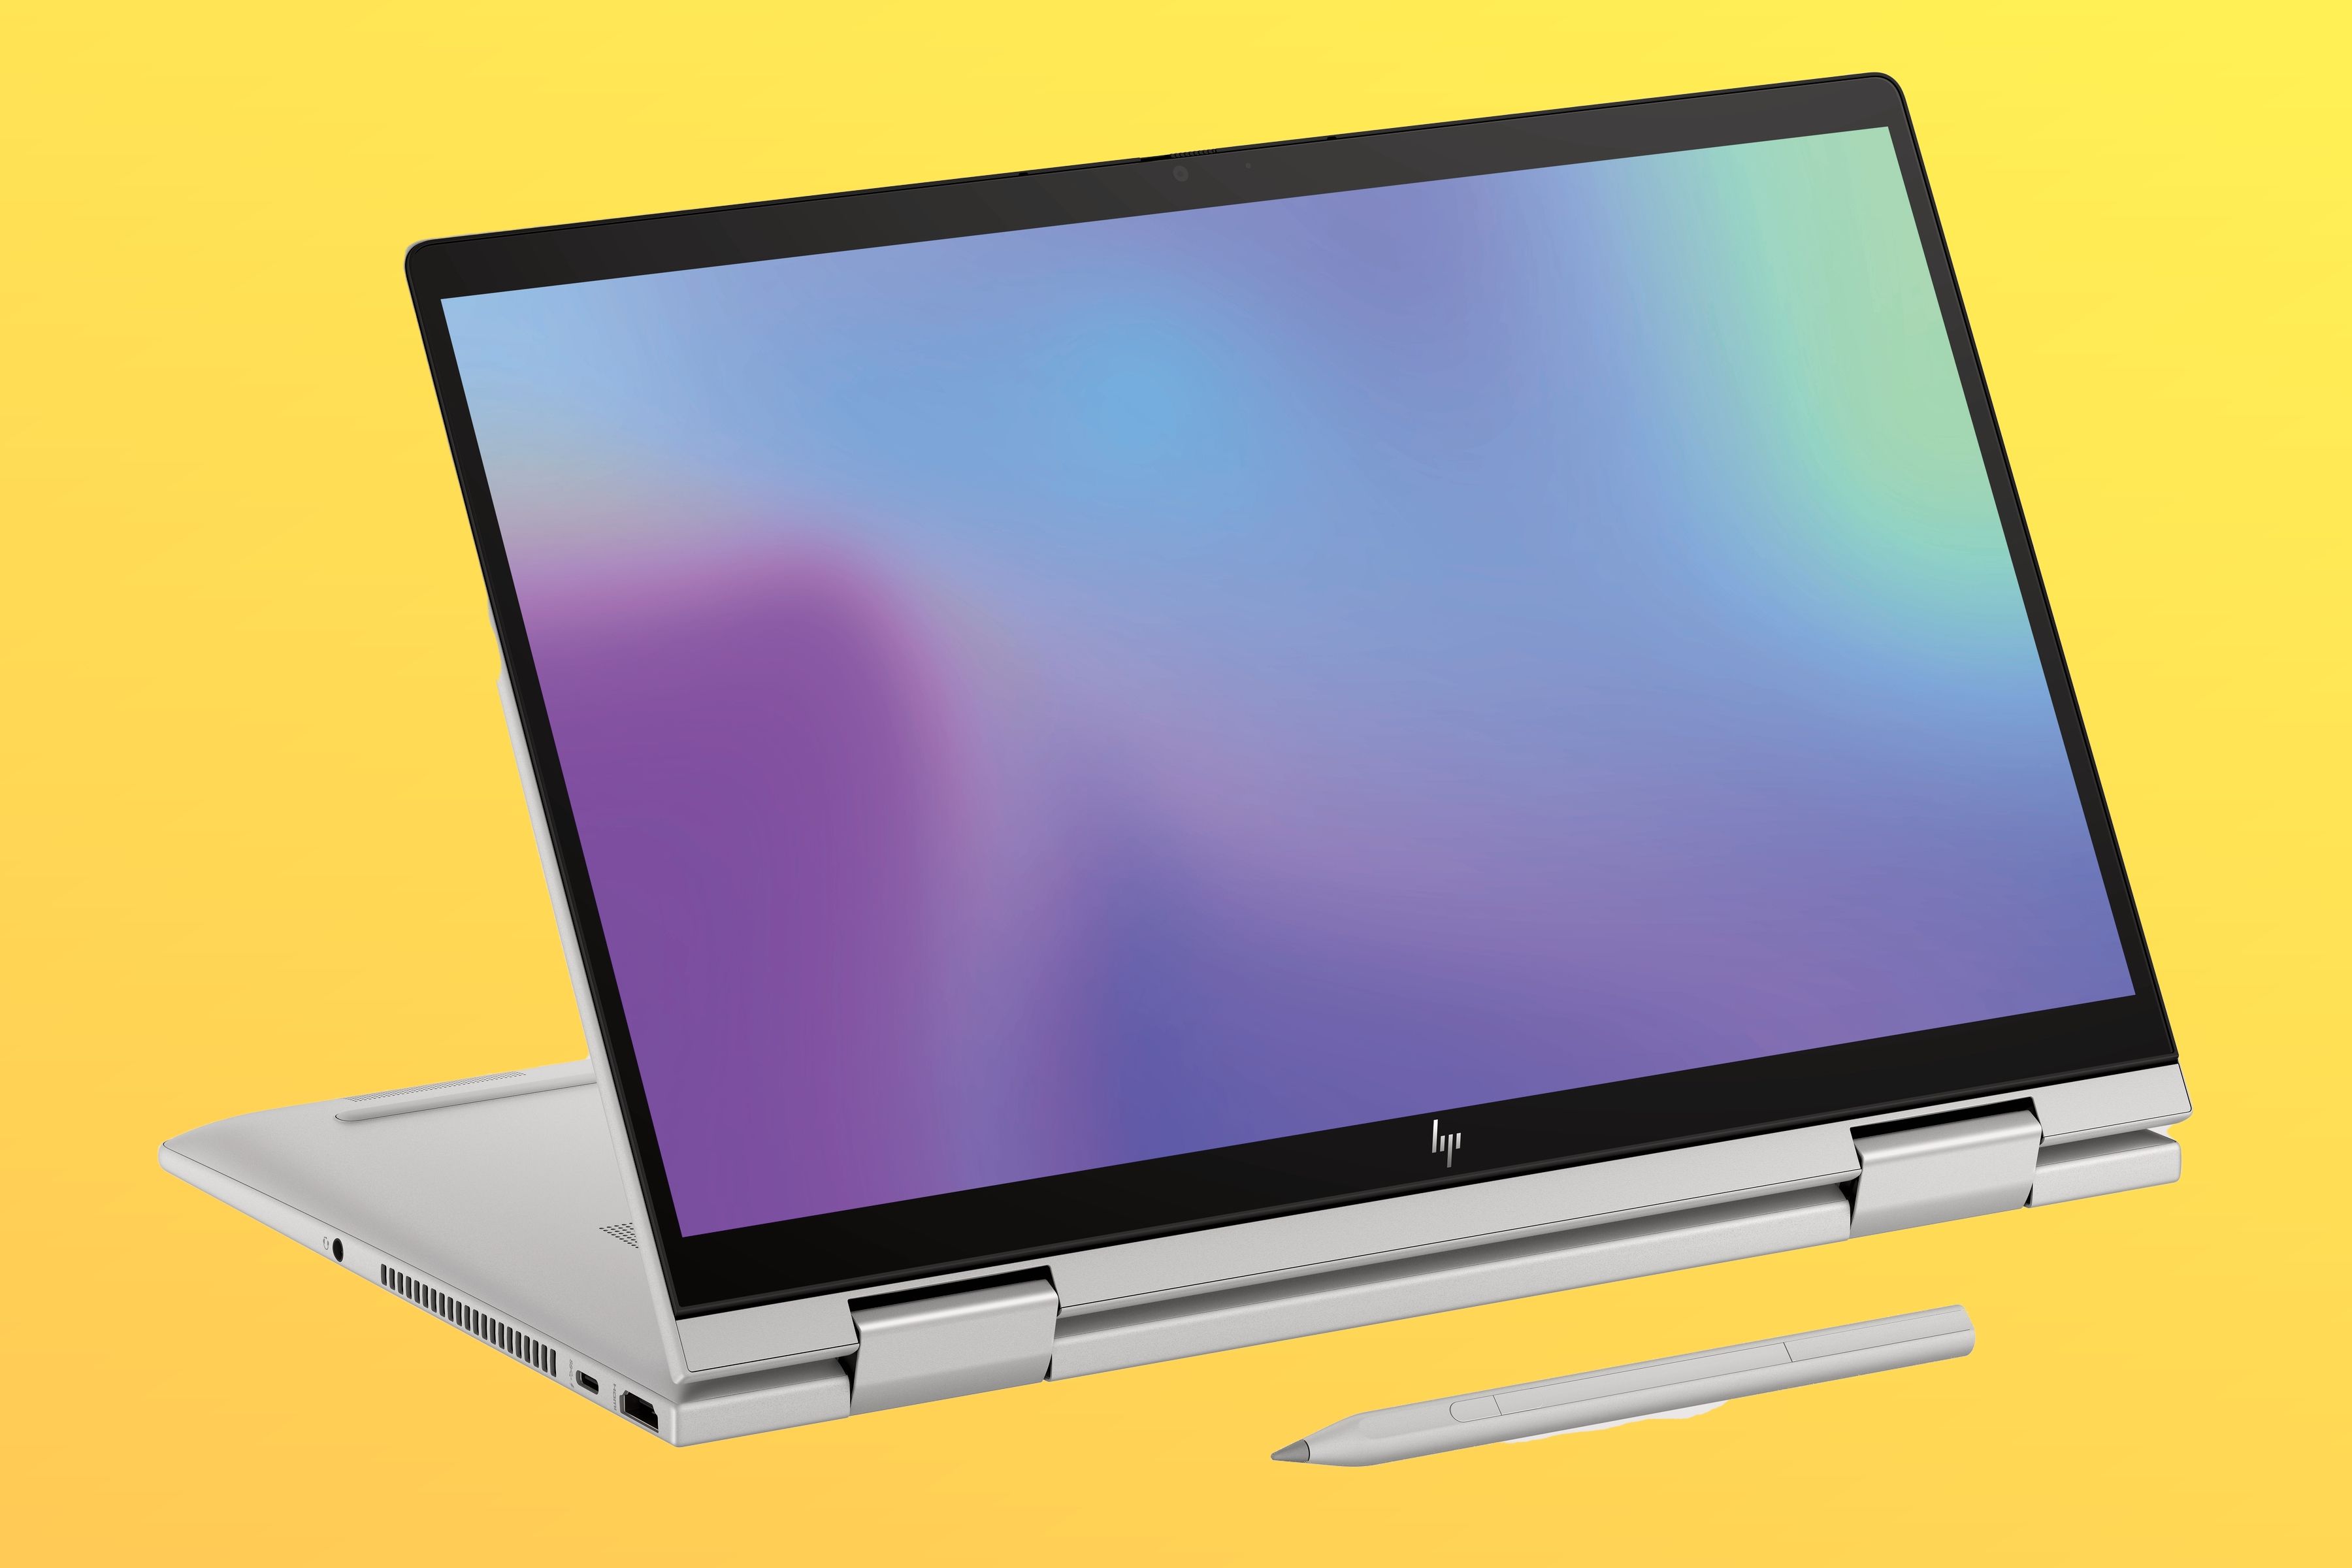 HP Envy x360 14 2-in-1-Laptop im Standmodus vor einem orangefarbenen Hintergrund mit Farbverlauf